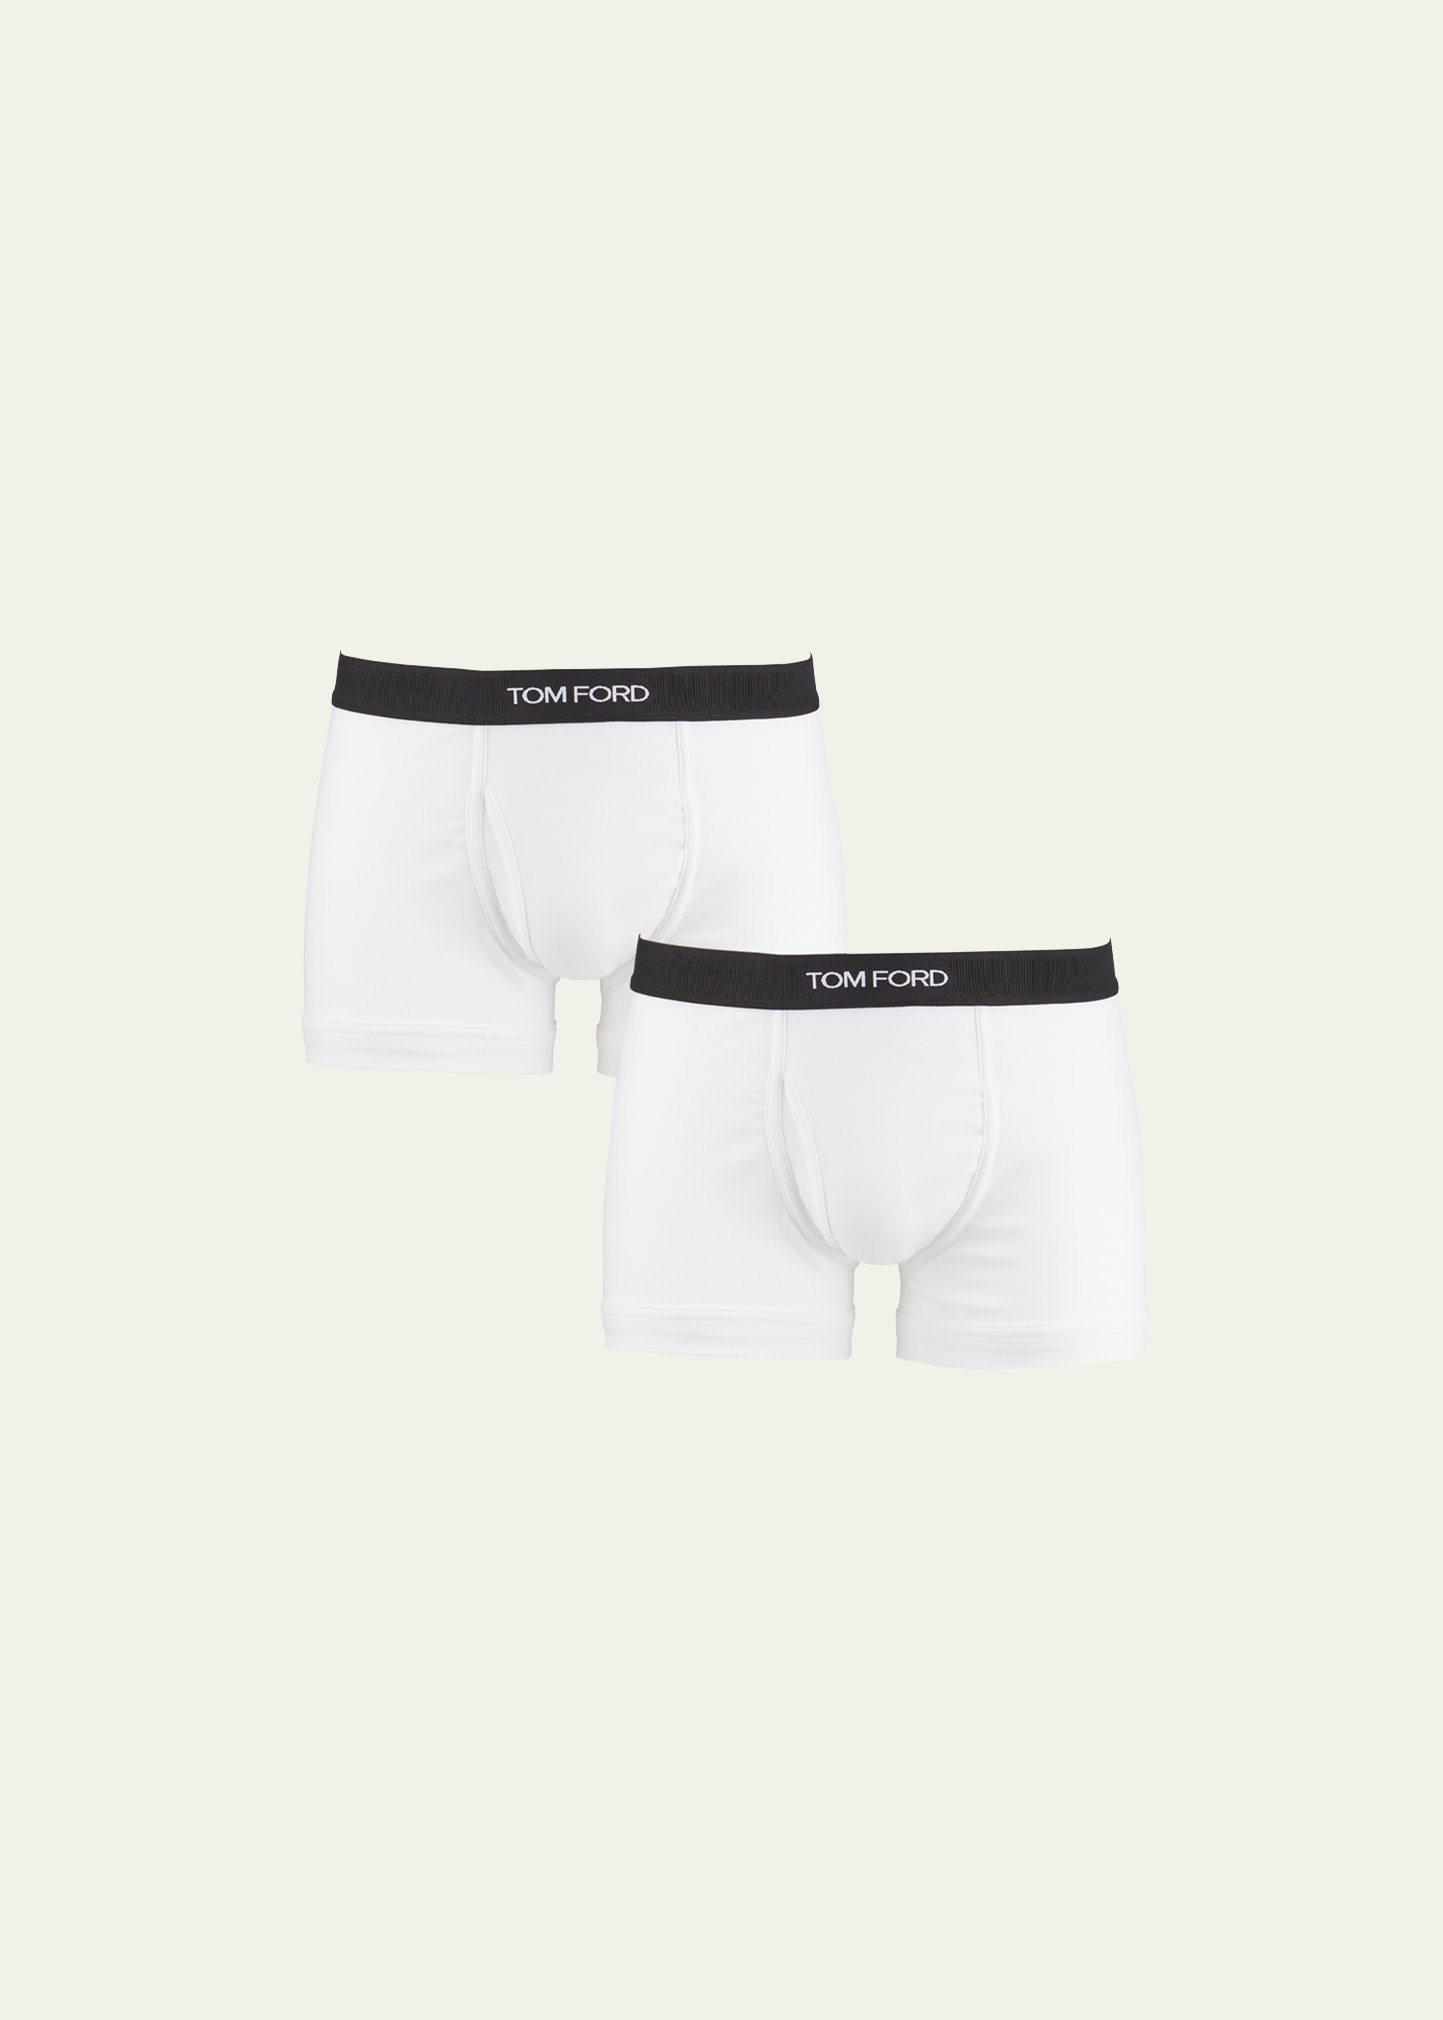 Bergdorf Goodman 100% Cotton Blue Red Striped Men’s Boxer Shorts Underwear